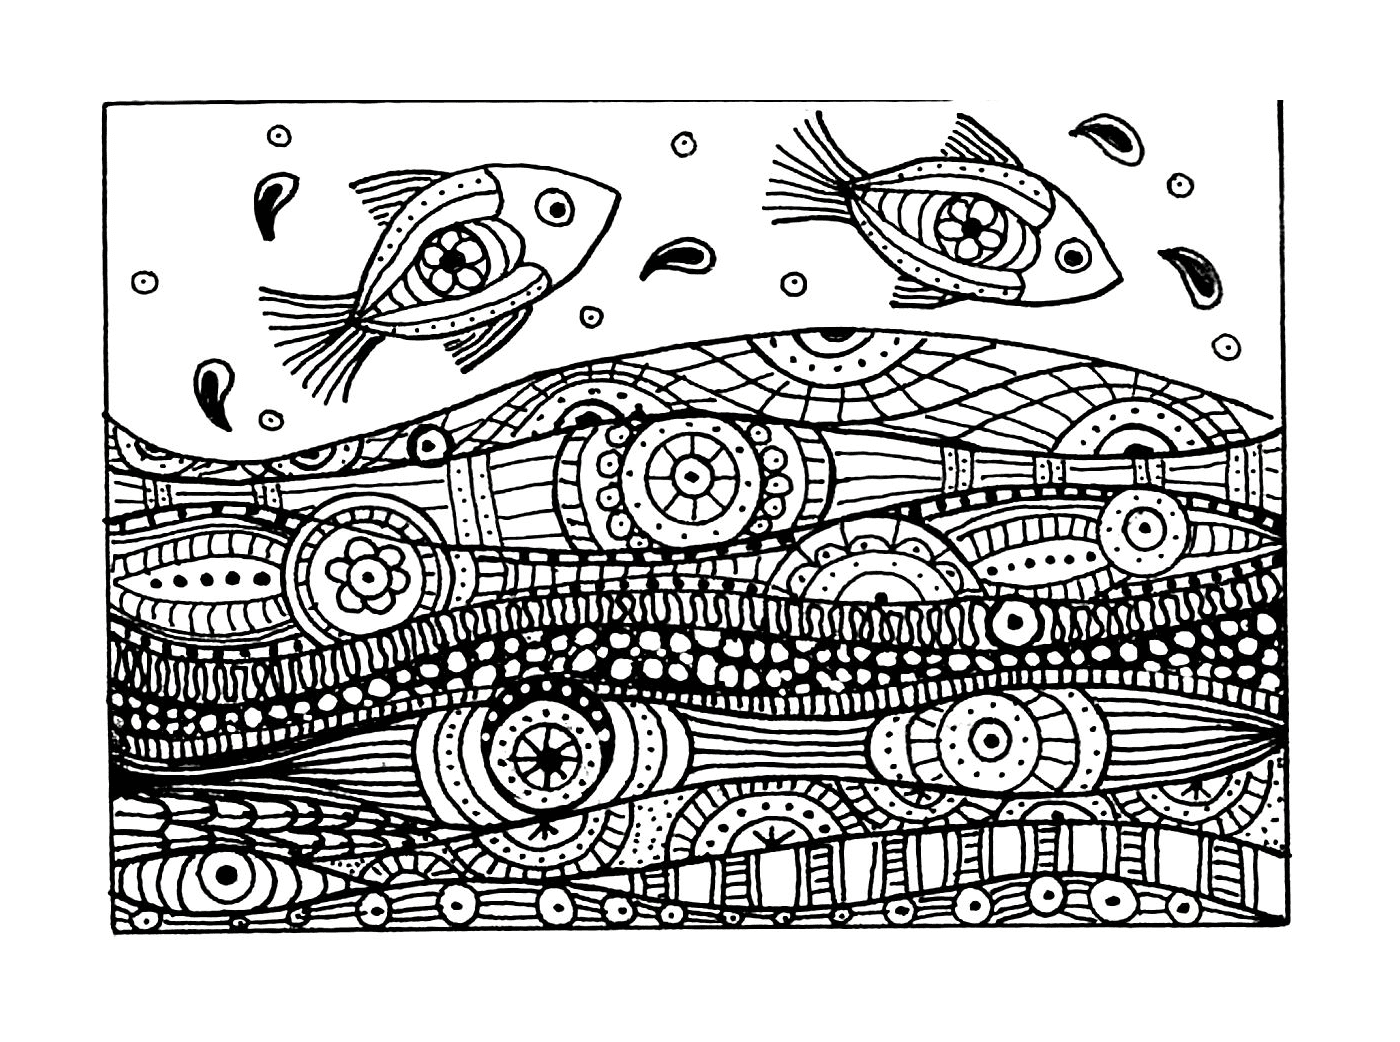  Peixes com padrões ondulados 